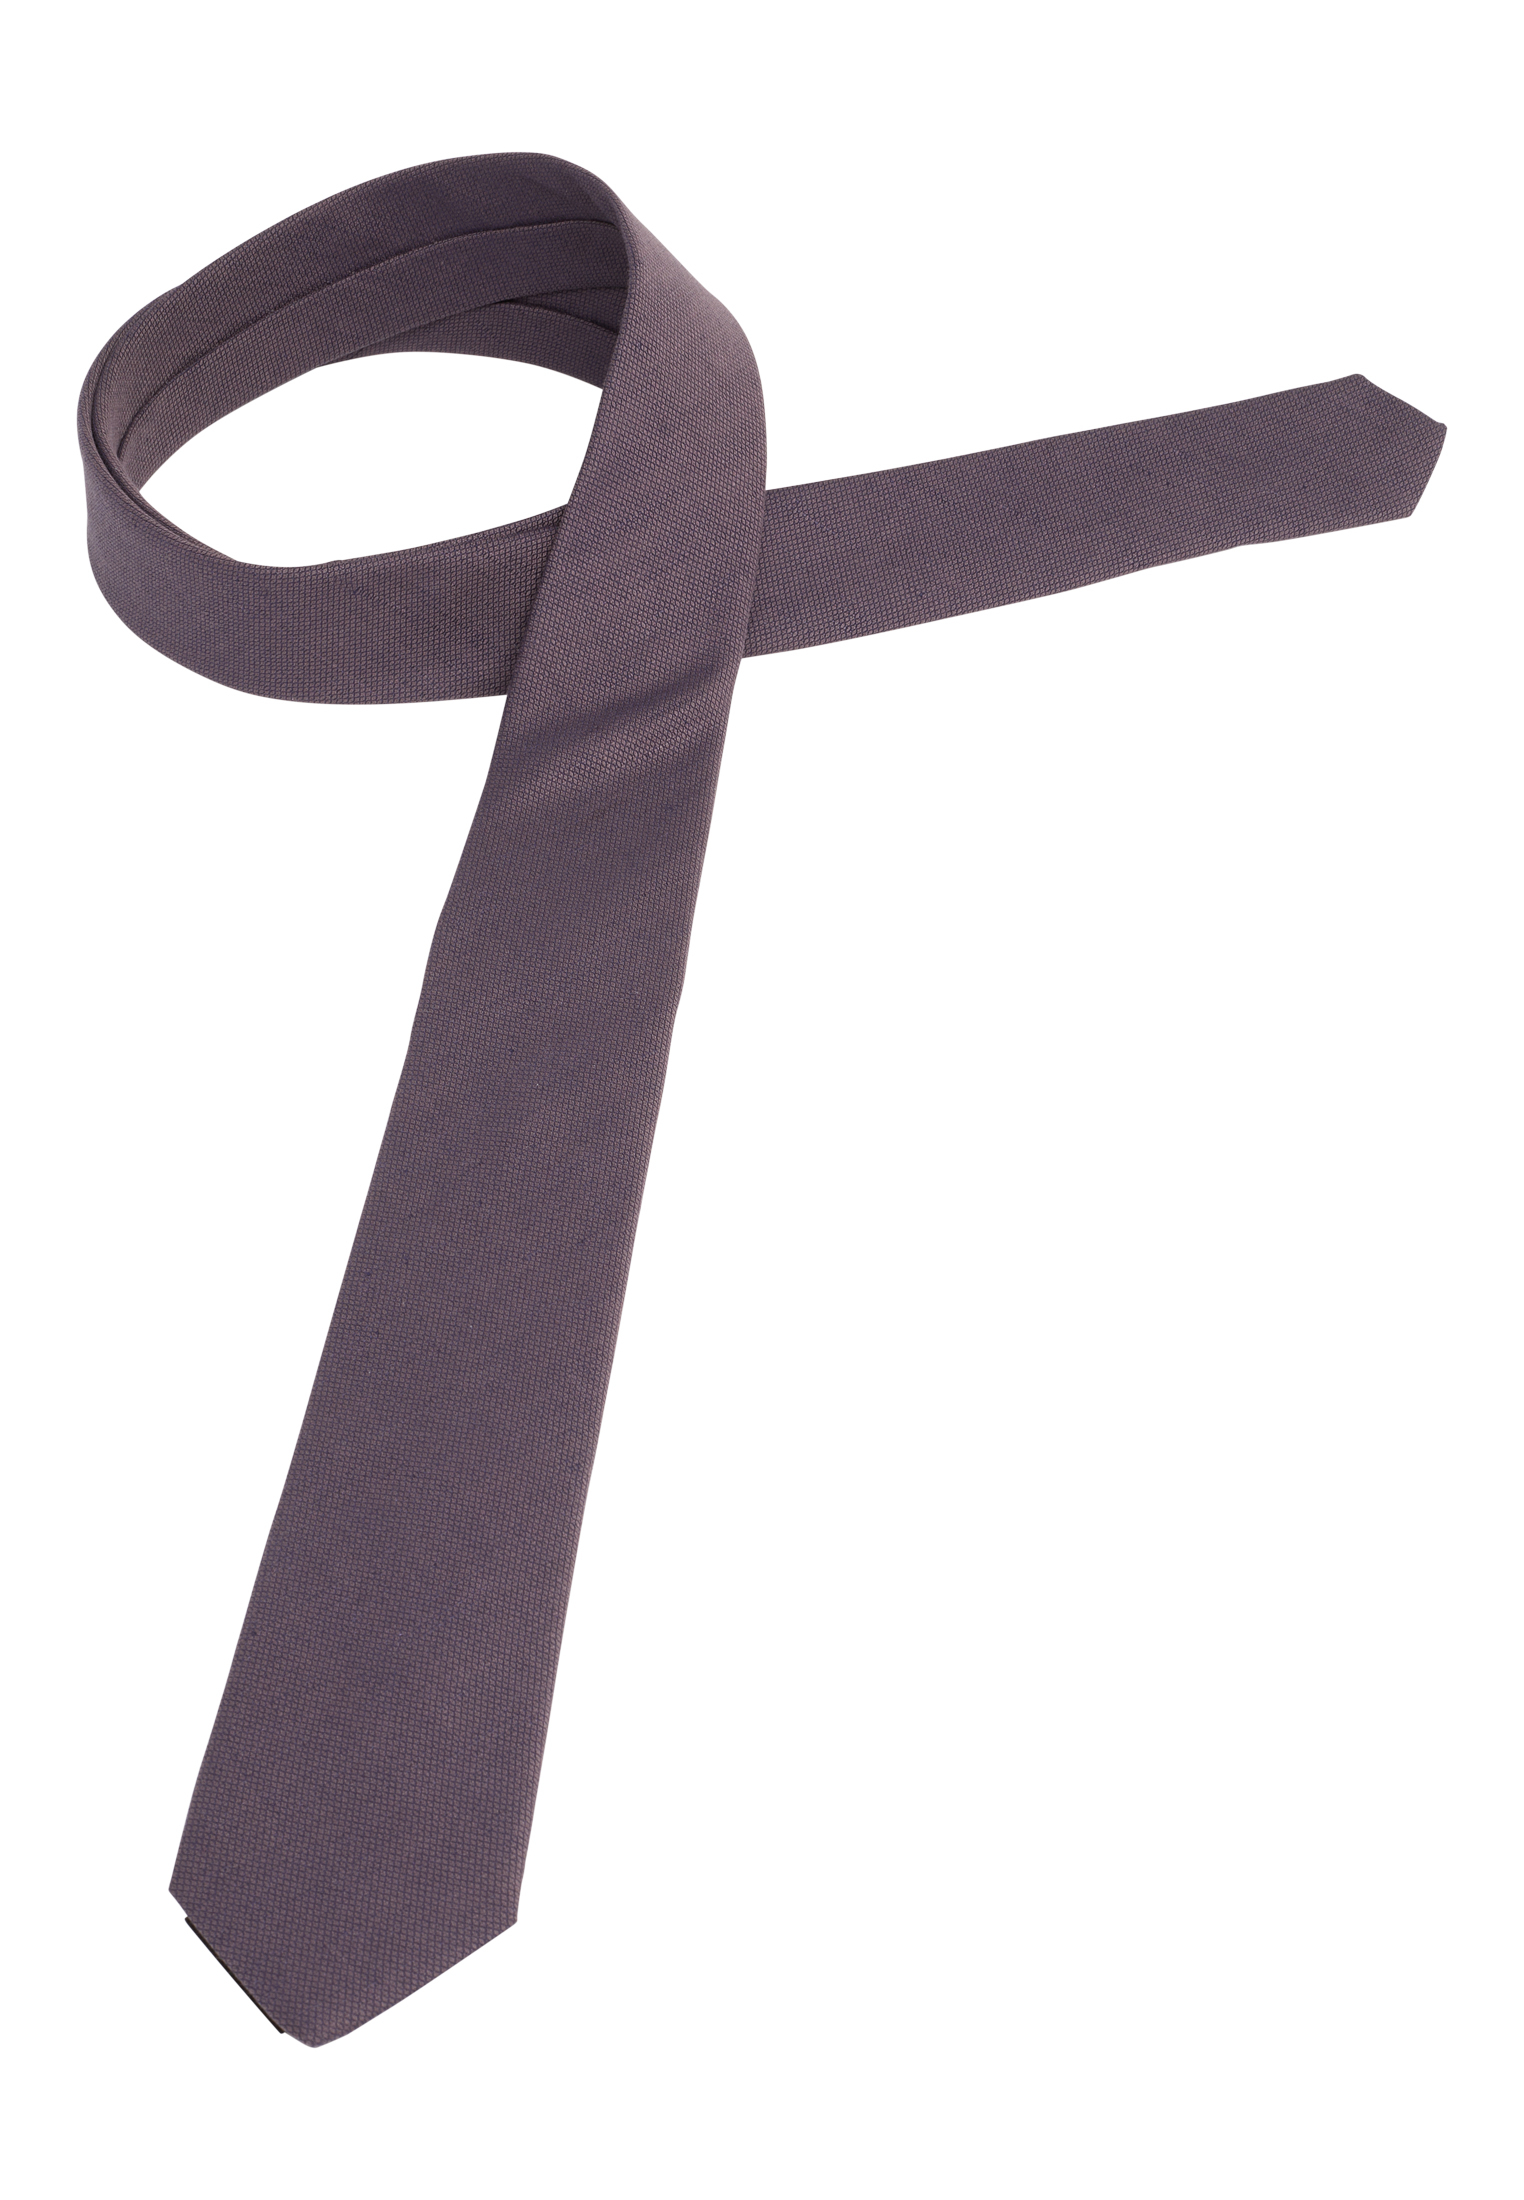 Krawatte in pflaume strukturiert | pflaume 142 | | 1AC01947-09-81-142